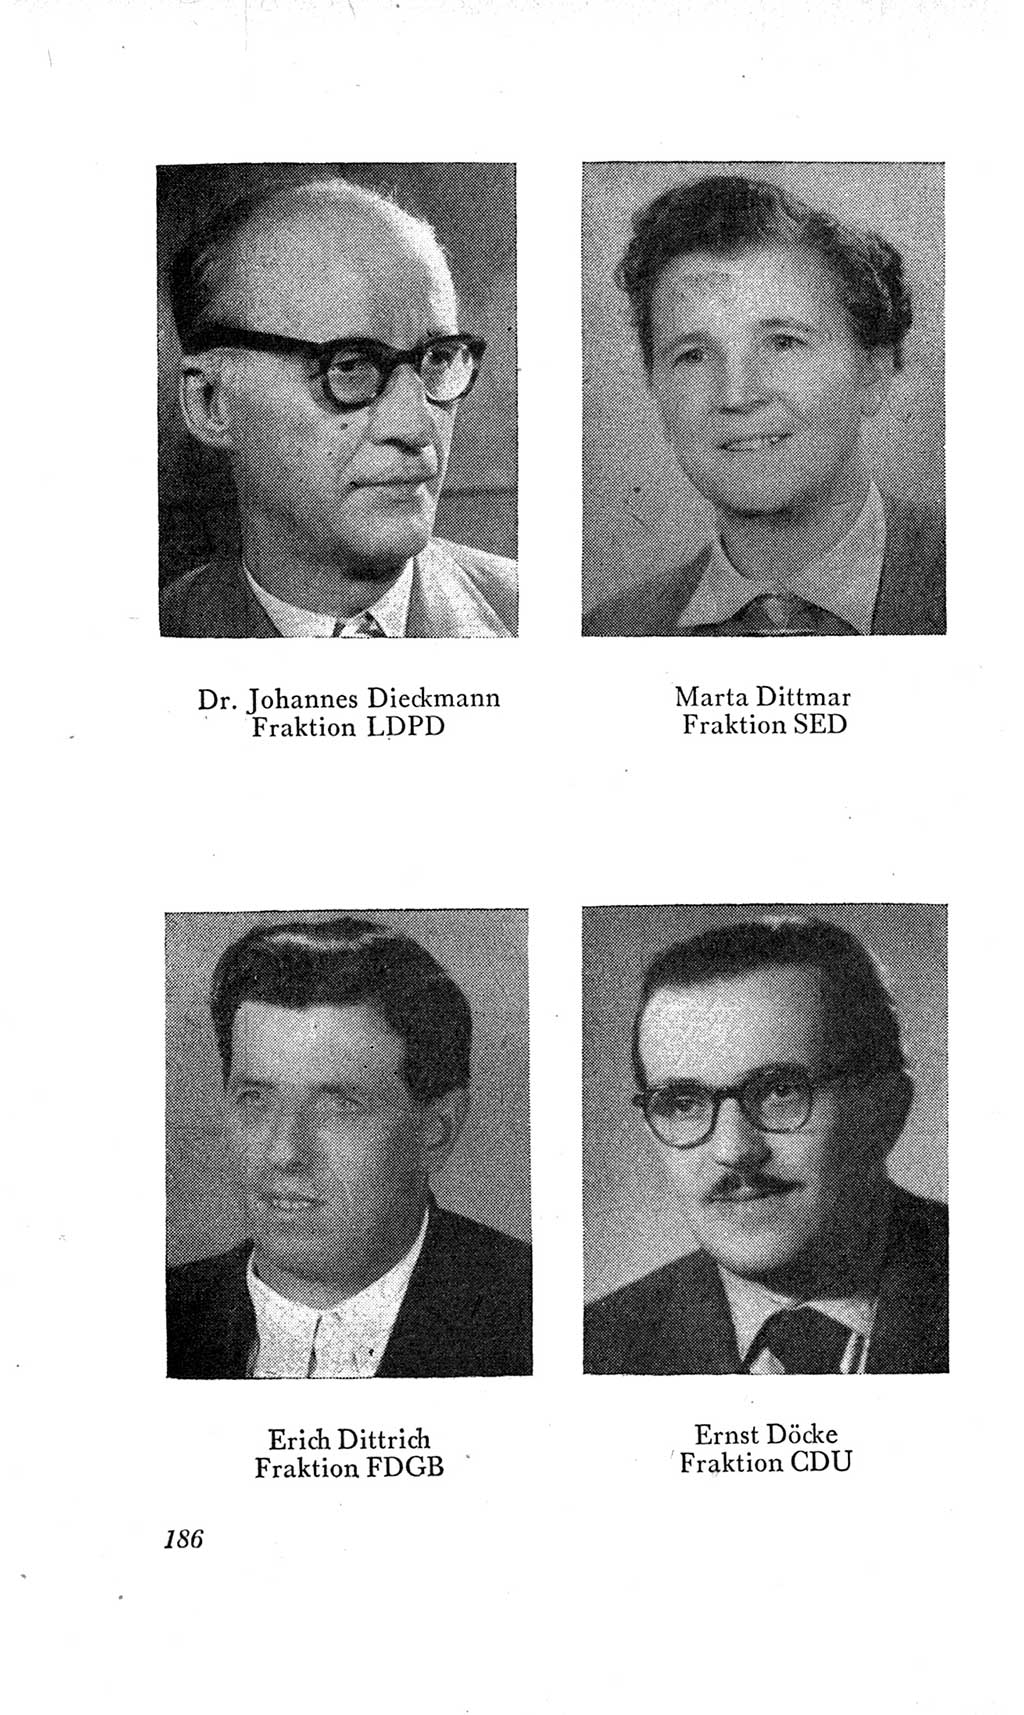 Handbuch der Volkskammer (VK) der Deutschen Demokratischen Republik (DDR), 2. Wahlperiode 1954-1958, Seite 186 (Hdb. VK. DDR, 2. WP. 1954-1958, S. 186)